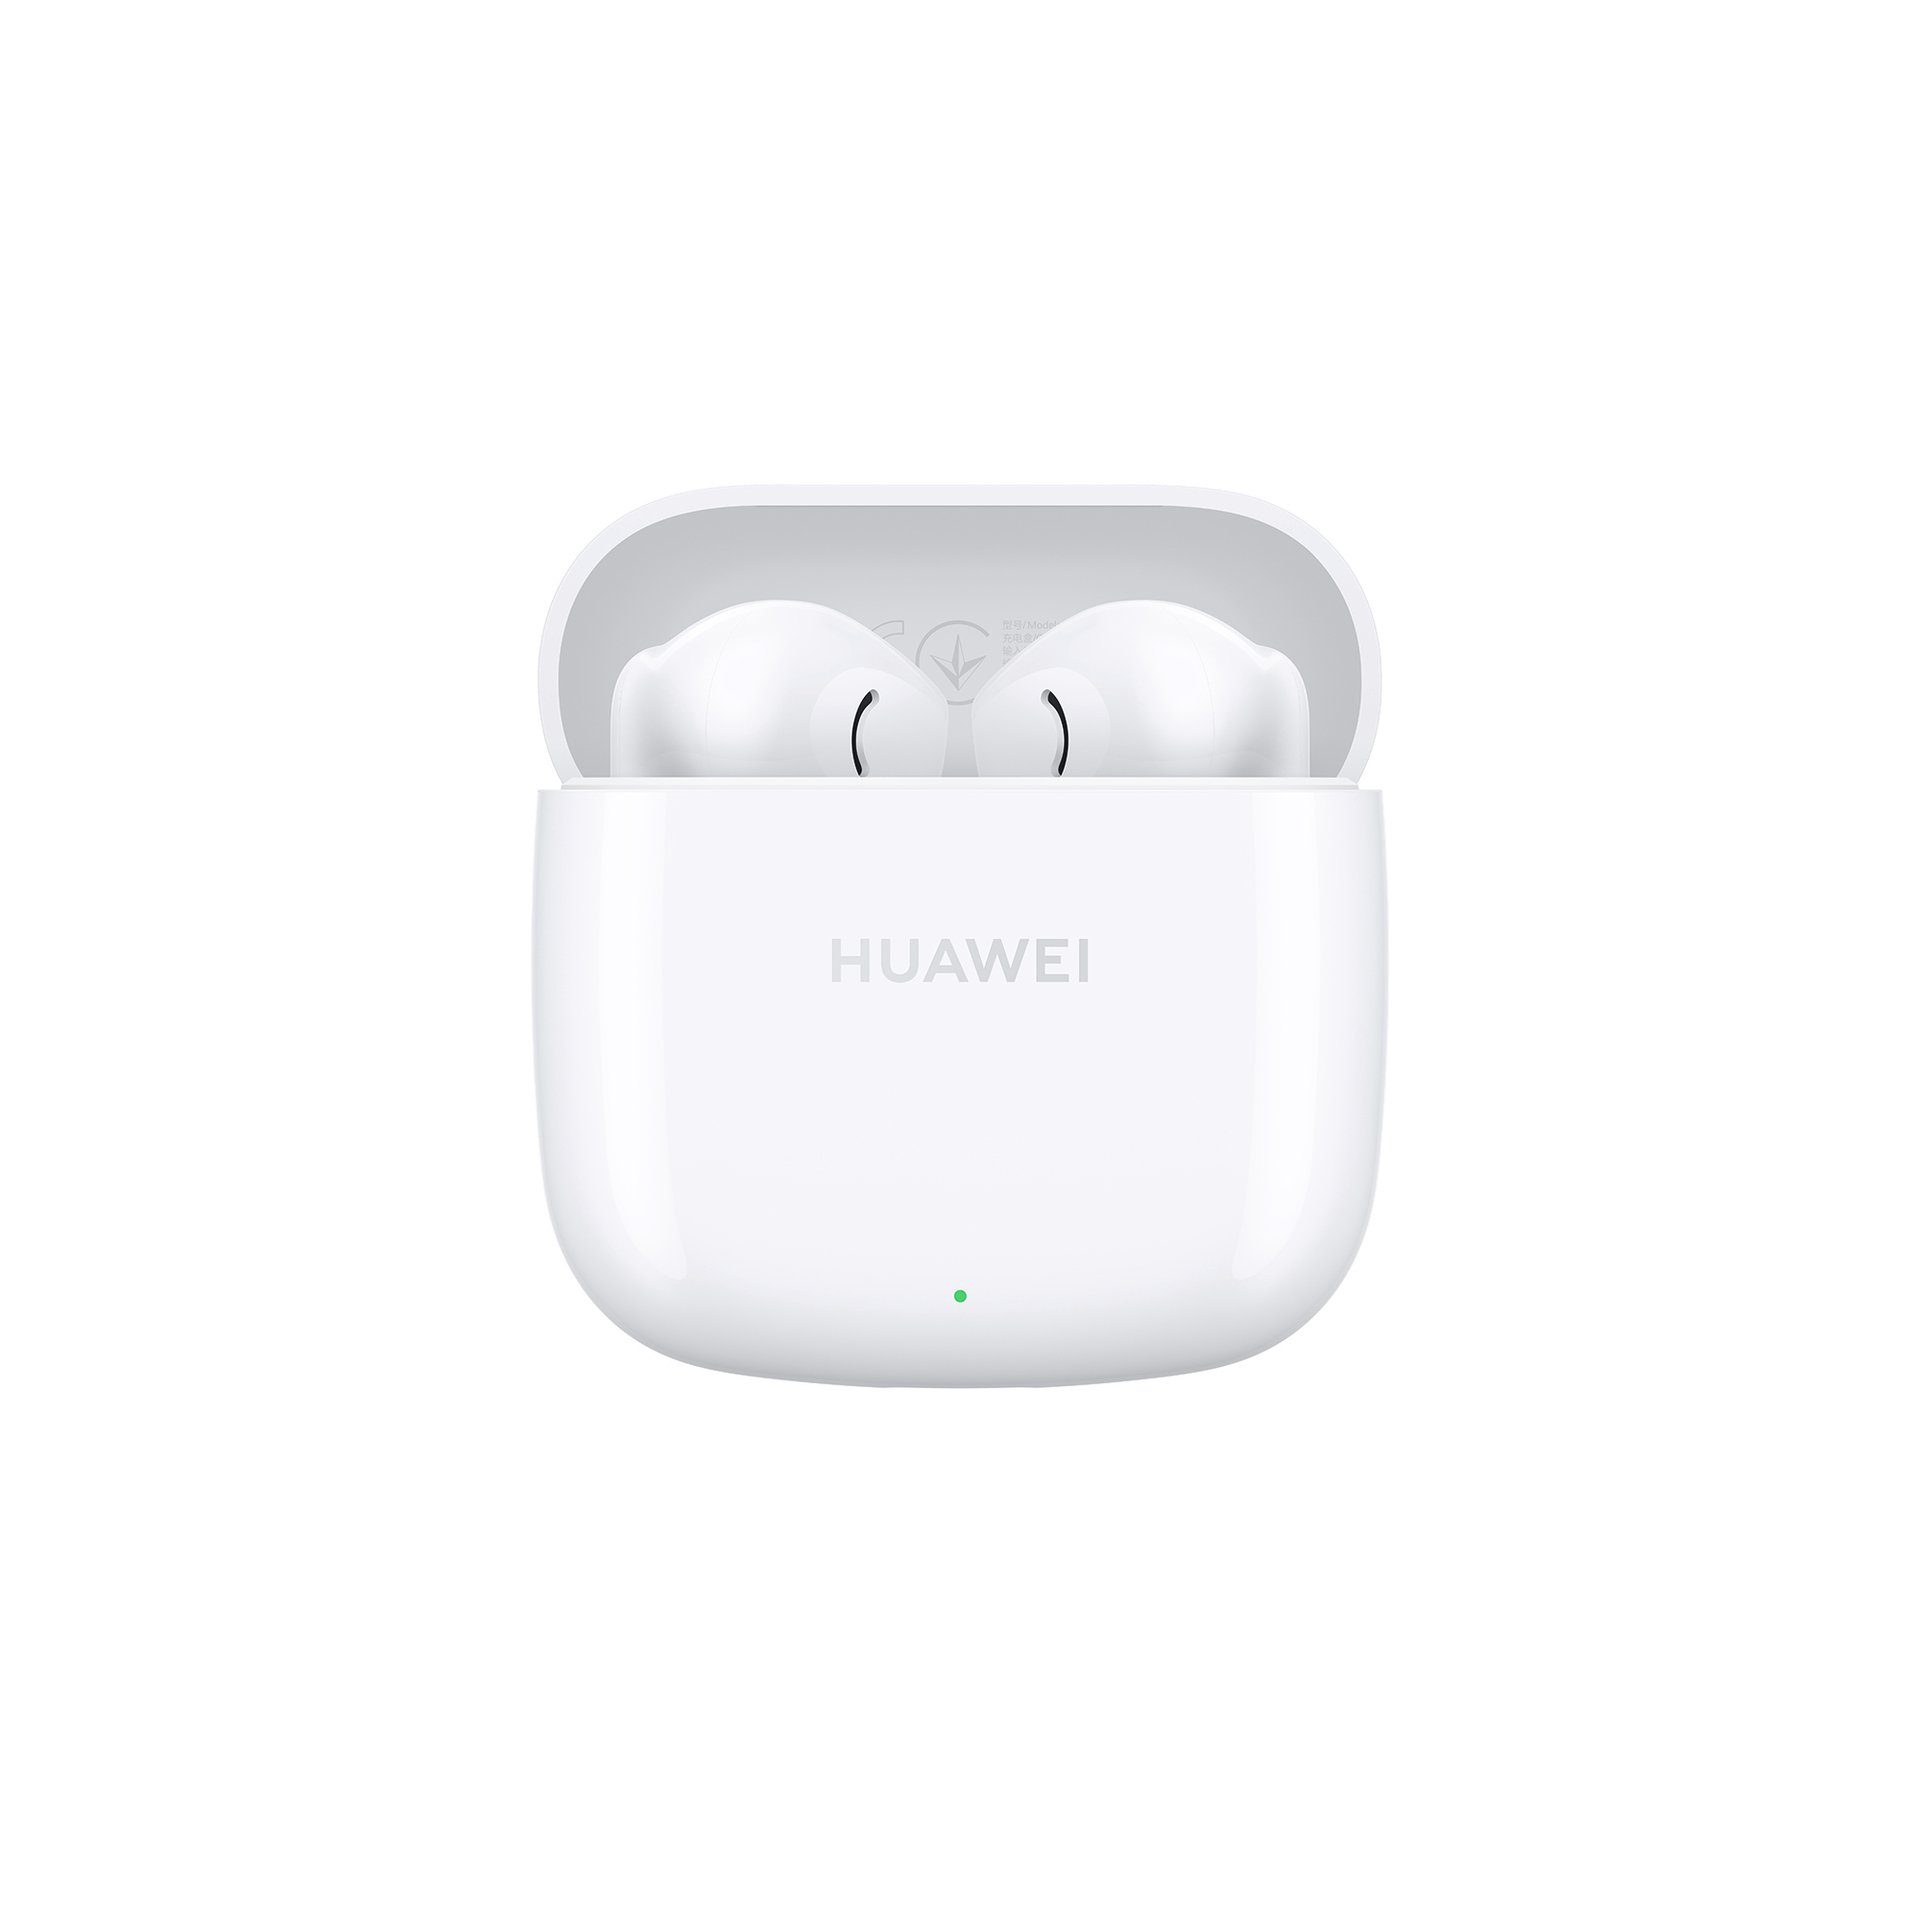 SE Huawei Weiß 2 FreeBuds In-Ear-Kopfhörer